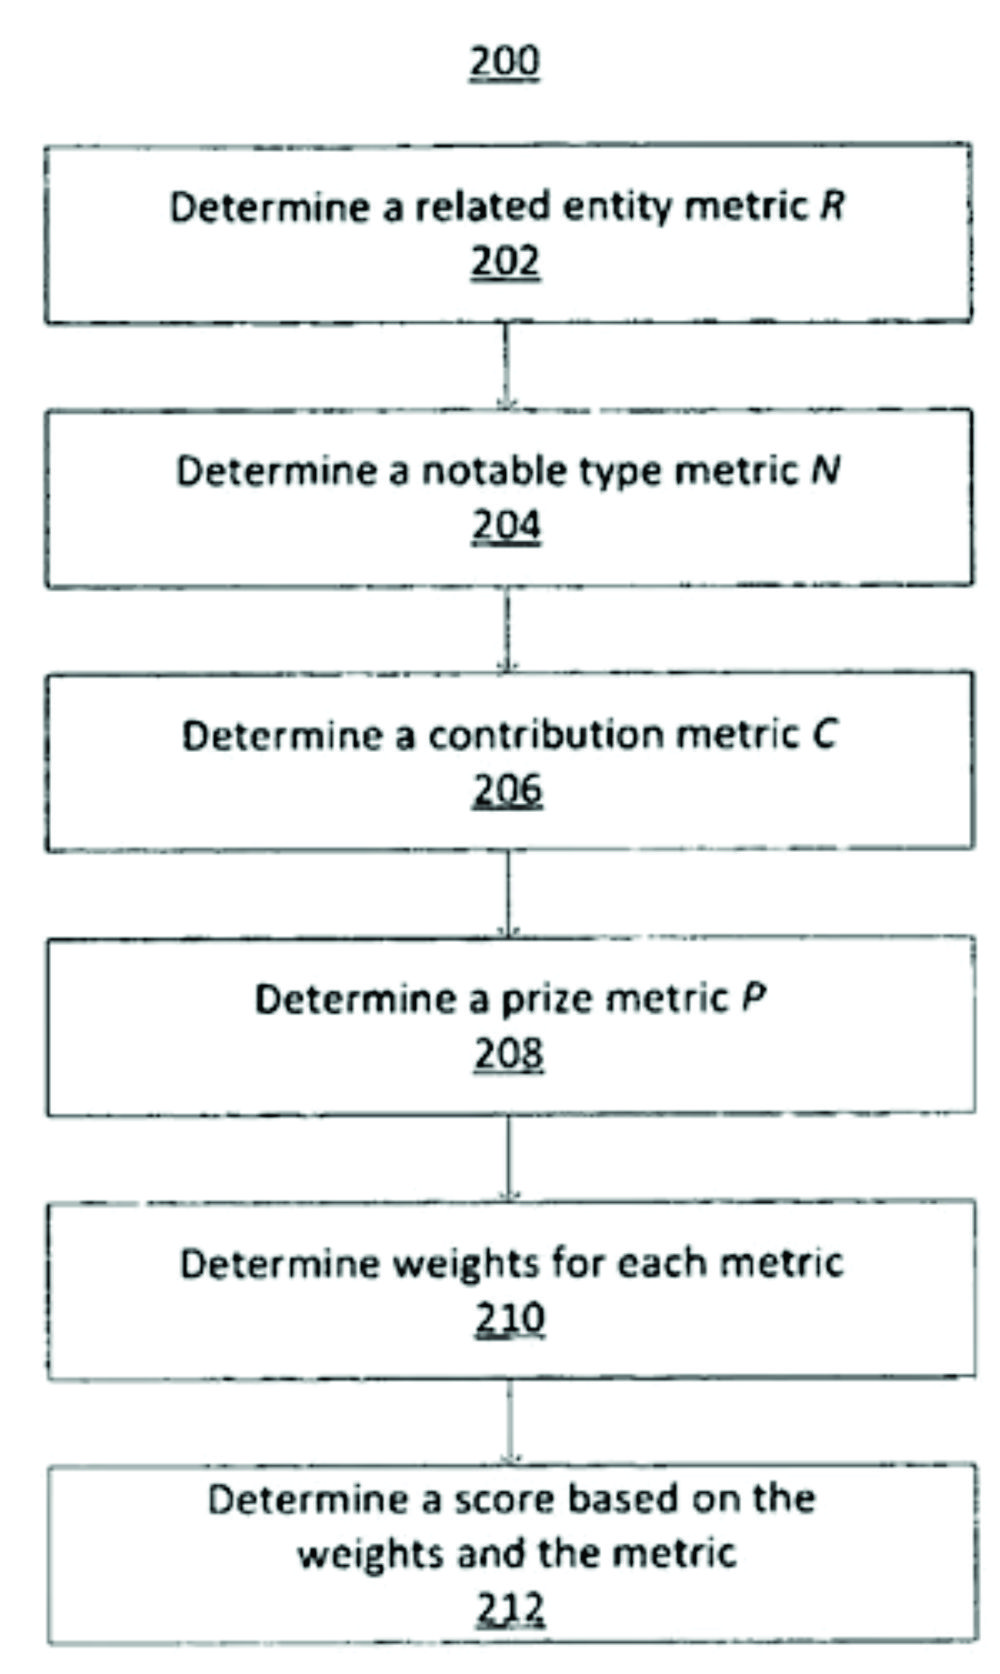 Rating based on entity metrics